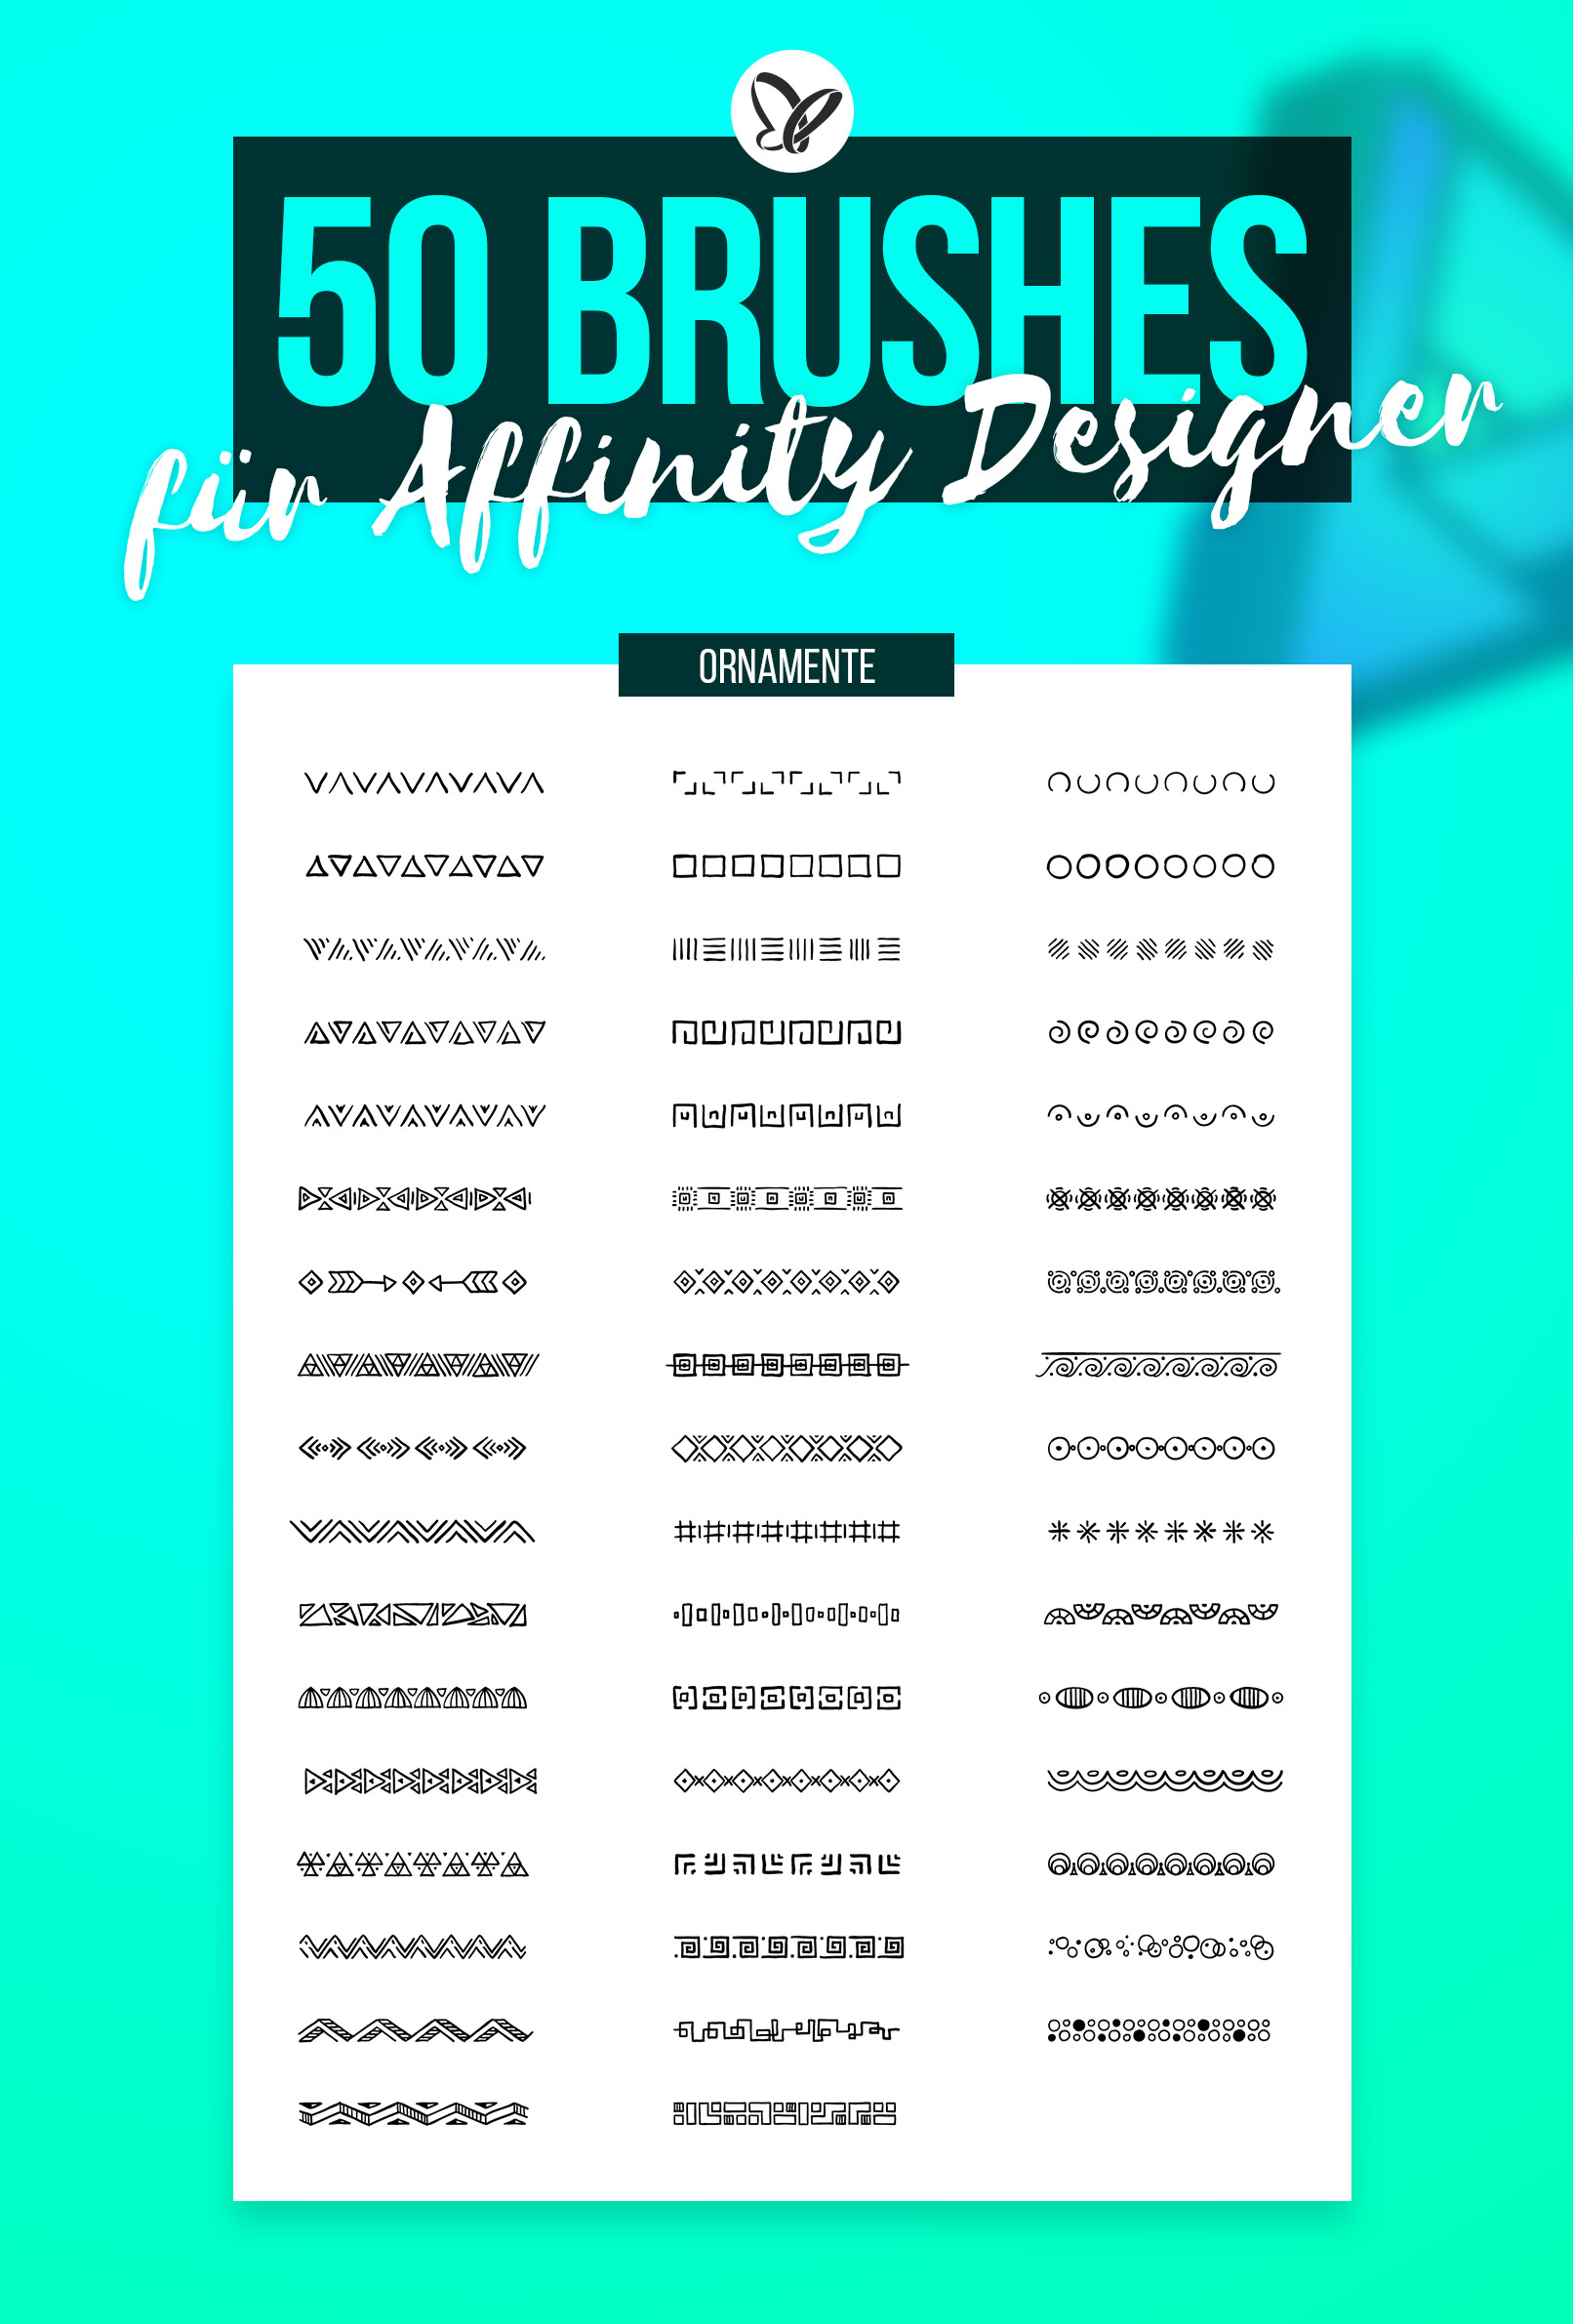 Vorschau auf die 50 Affinity Designer Brushes mit Ornamenten